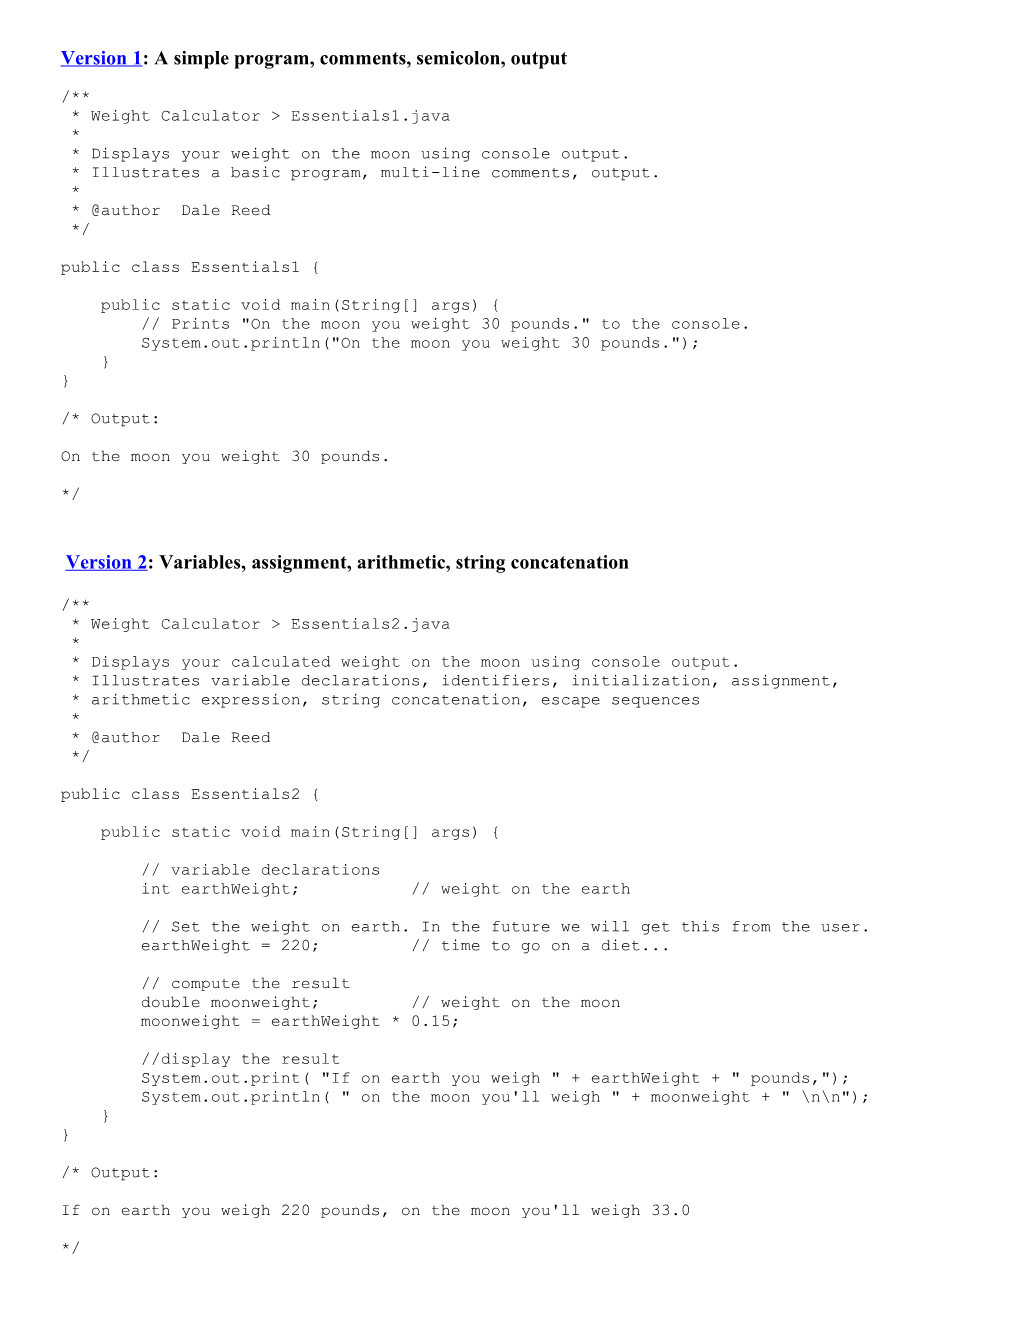 Version 1: a Simple Program, Comments, Semicolon, Output